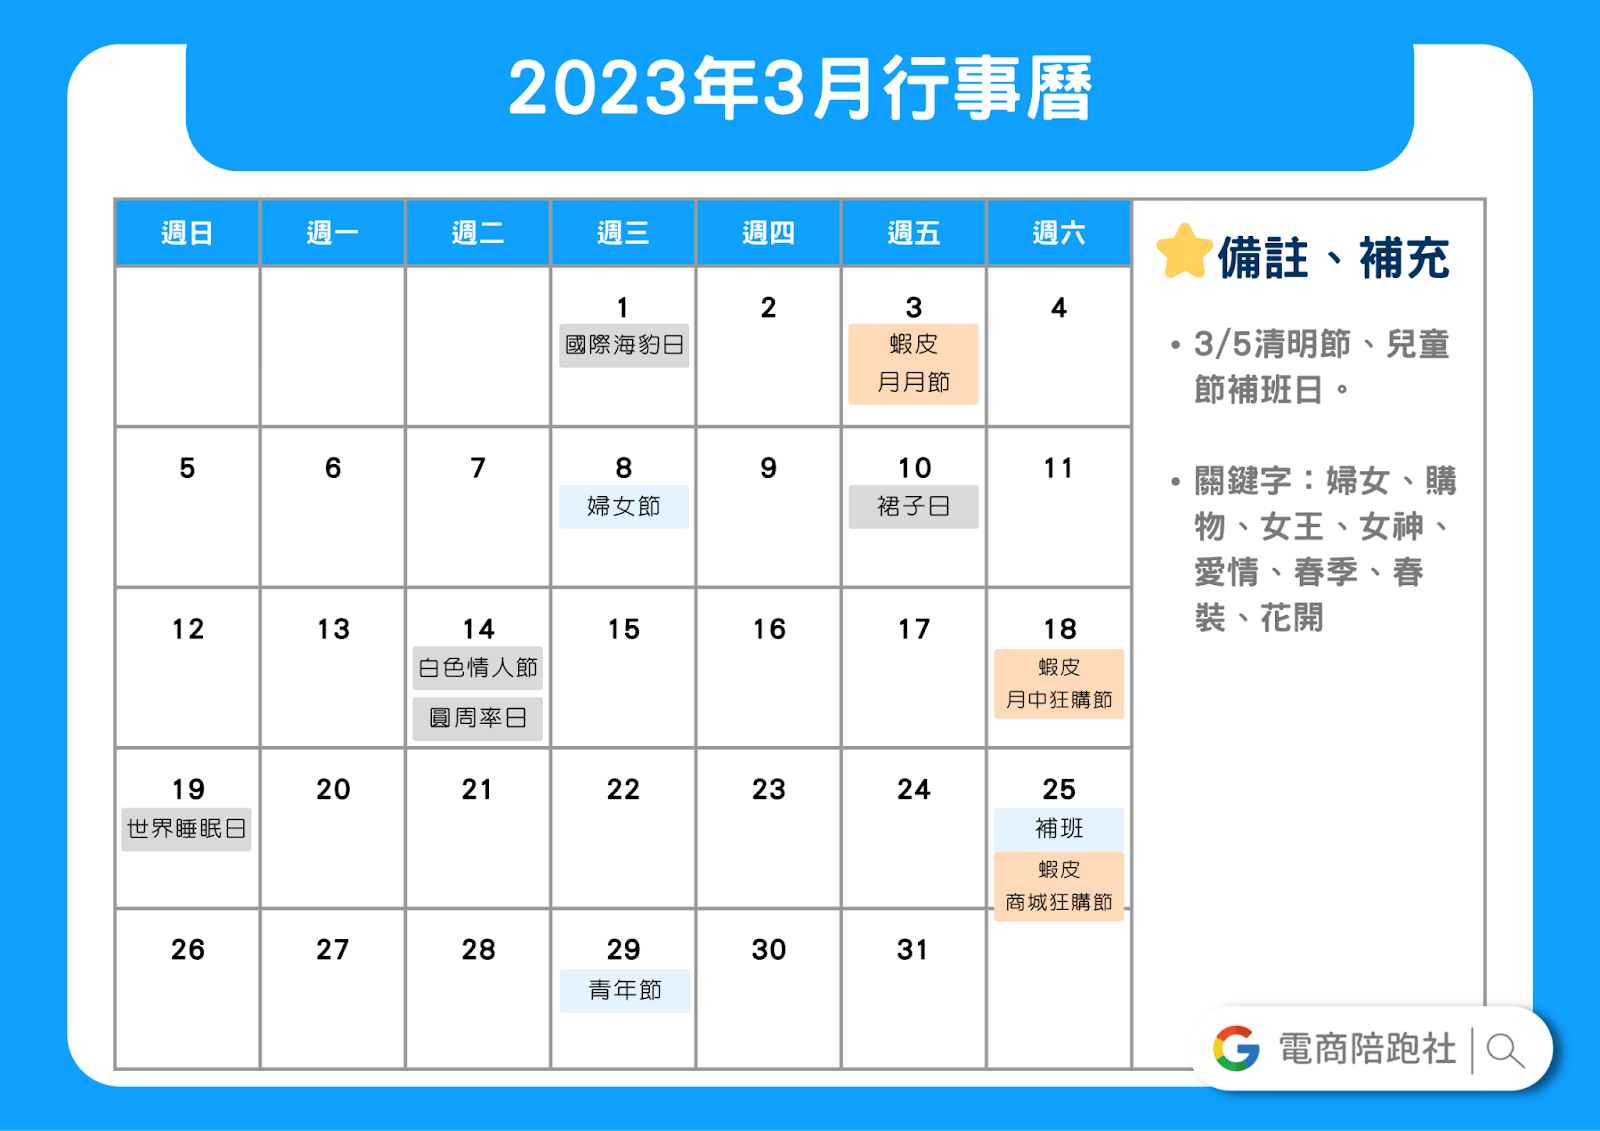 2023節慶行銷行事曆-3 月